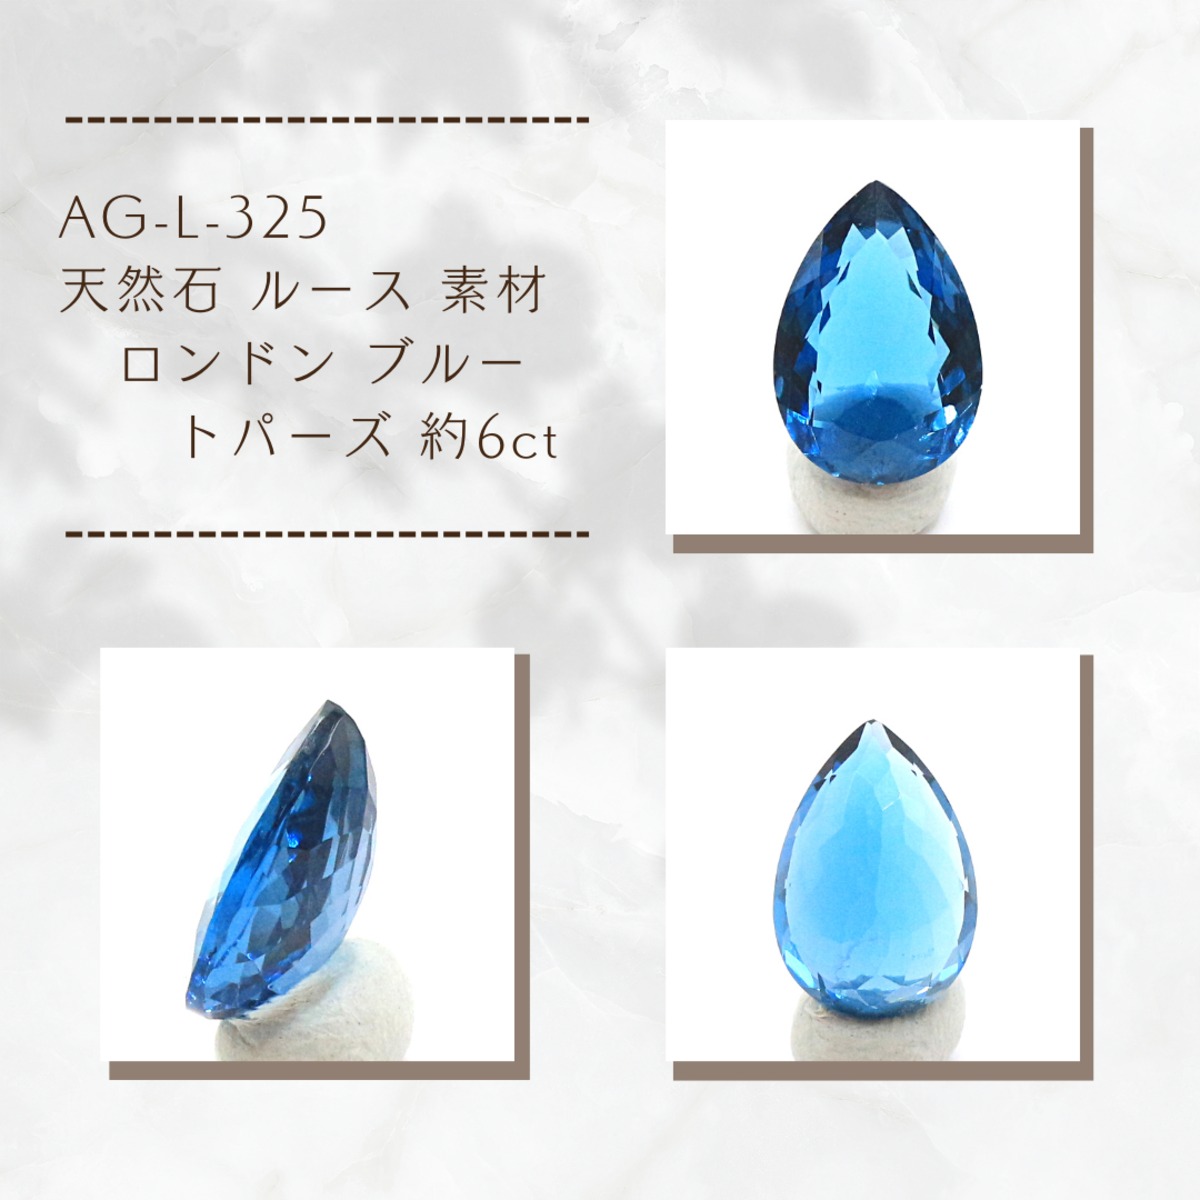 AG-L-325 天然石 ルース 素材ロンドン ブルー トパーズ 約6ct